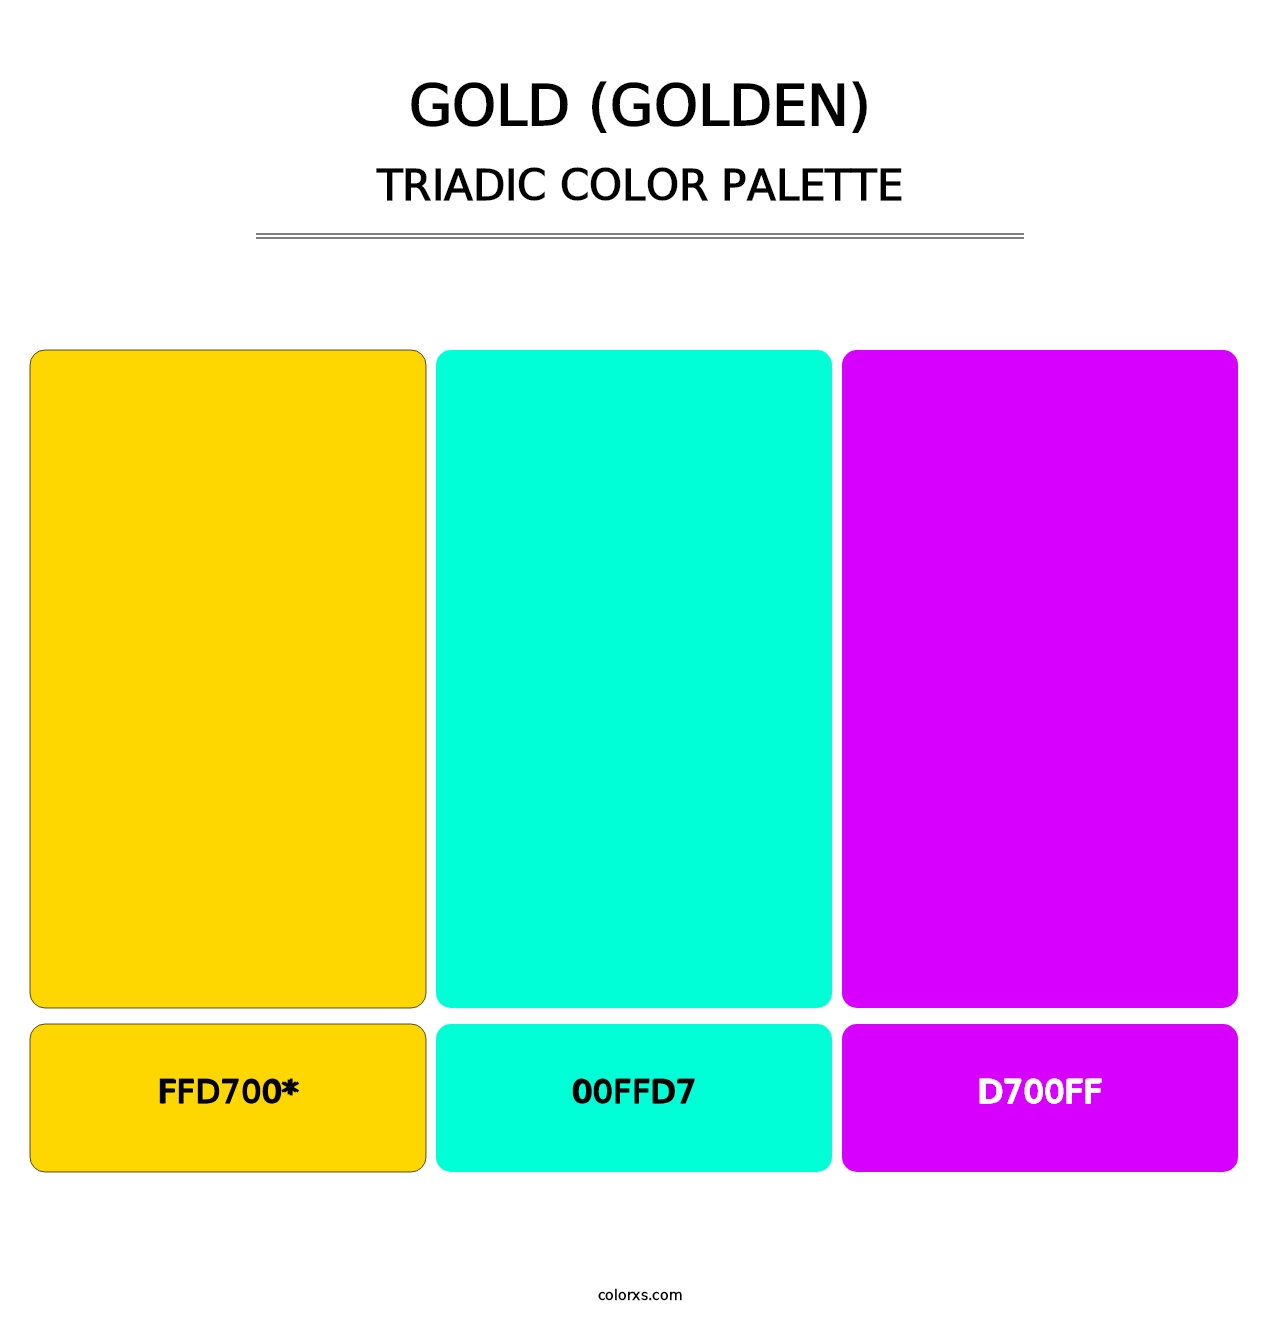 Gold (Golden) - Triadic Color Palette